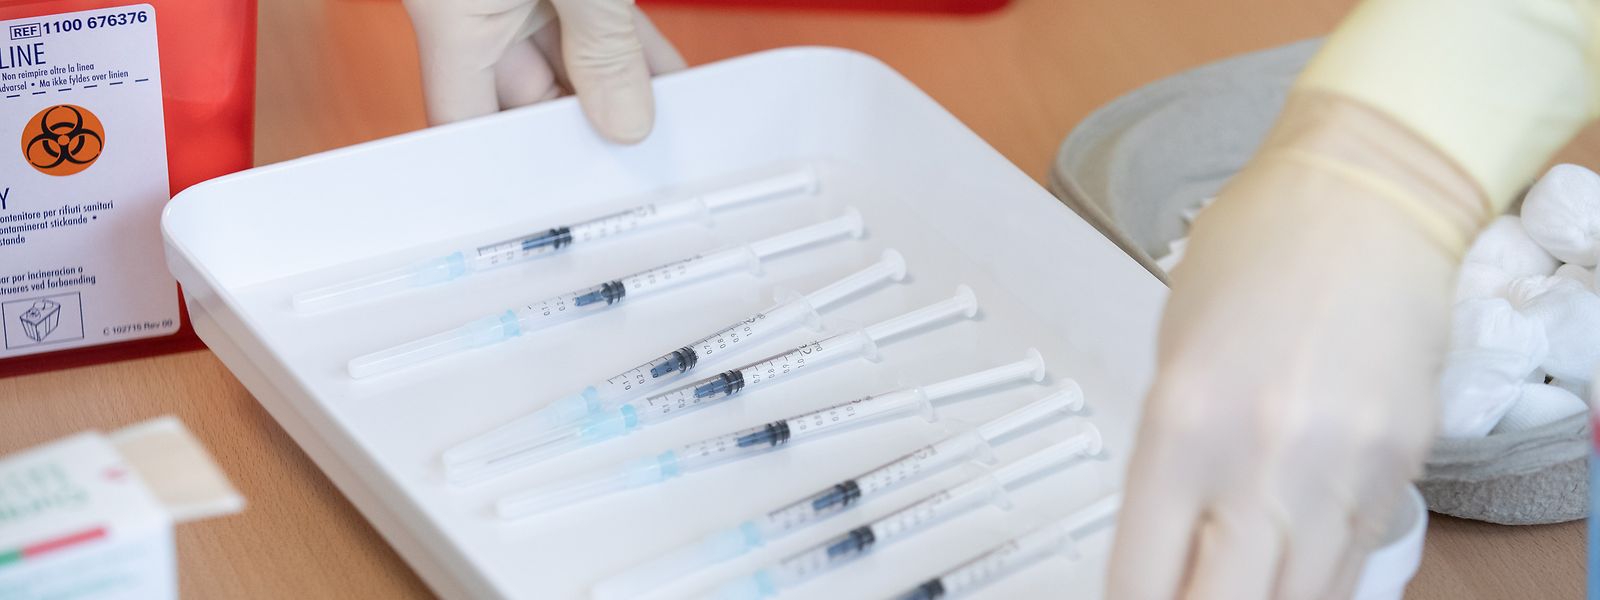 A l'heure actuelle, 159.110 doses de vaccin anti-covid ont été administrées au Grand-Duché.